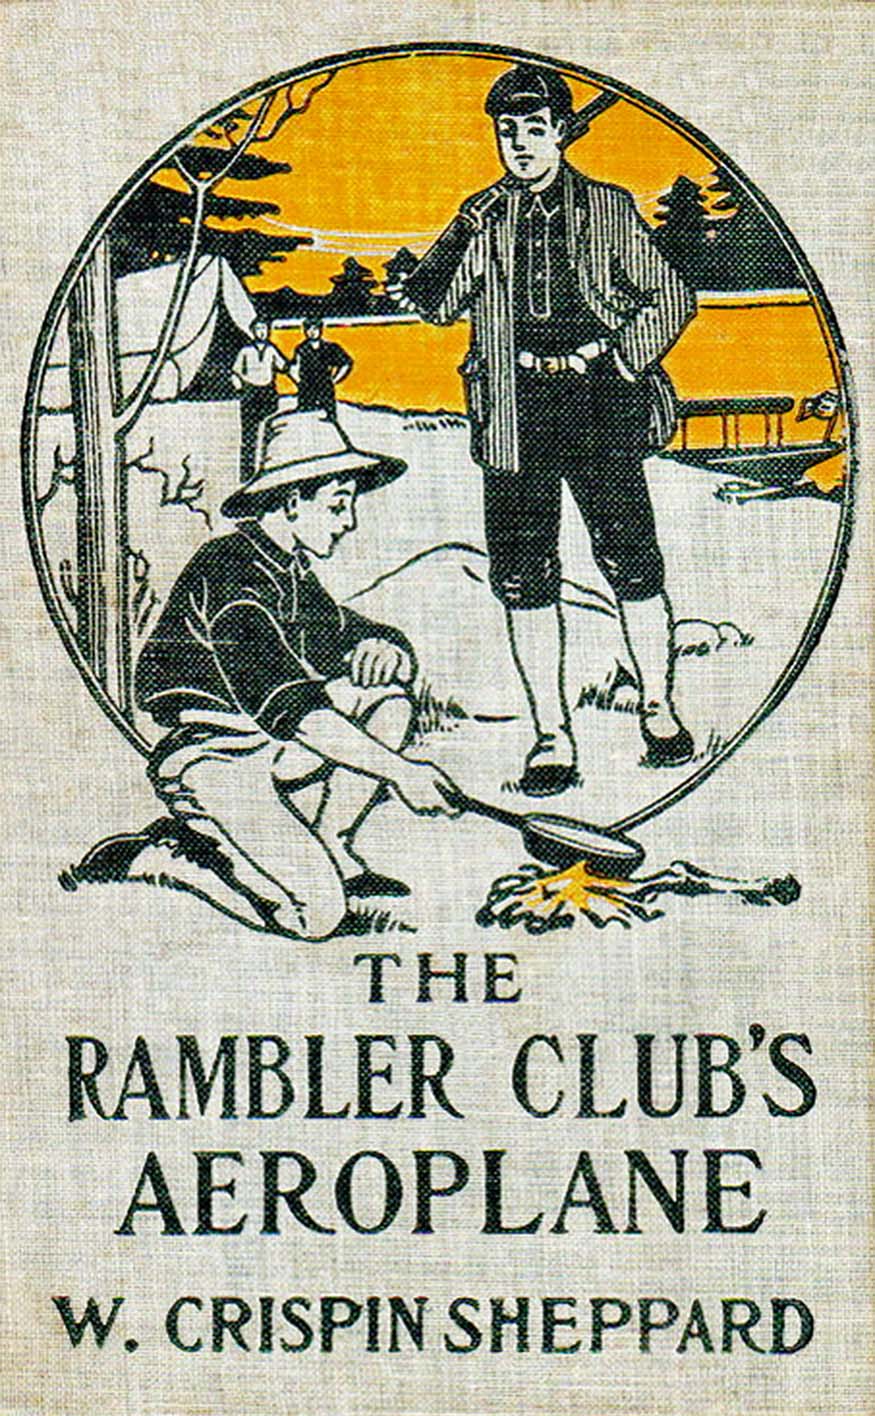 The Rambler Club's aeroplane